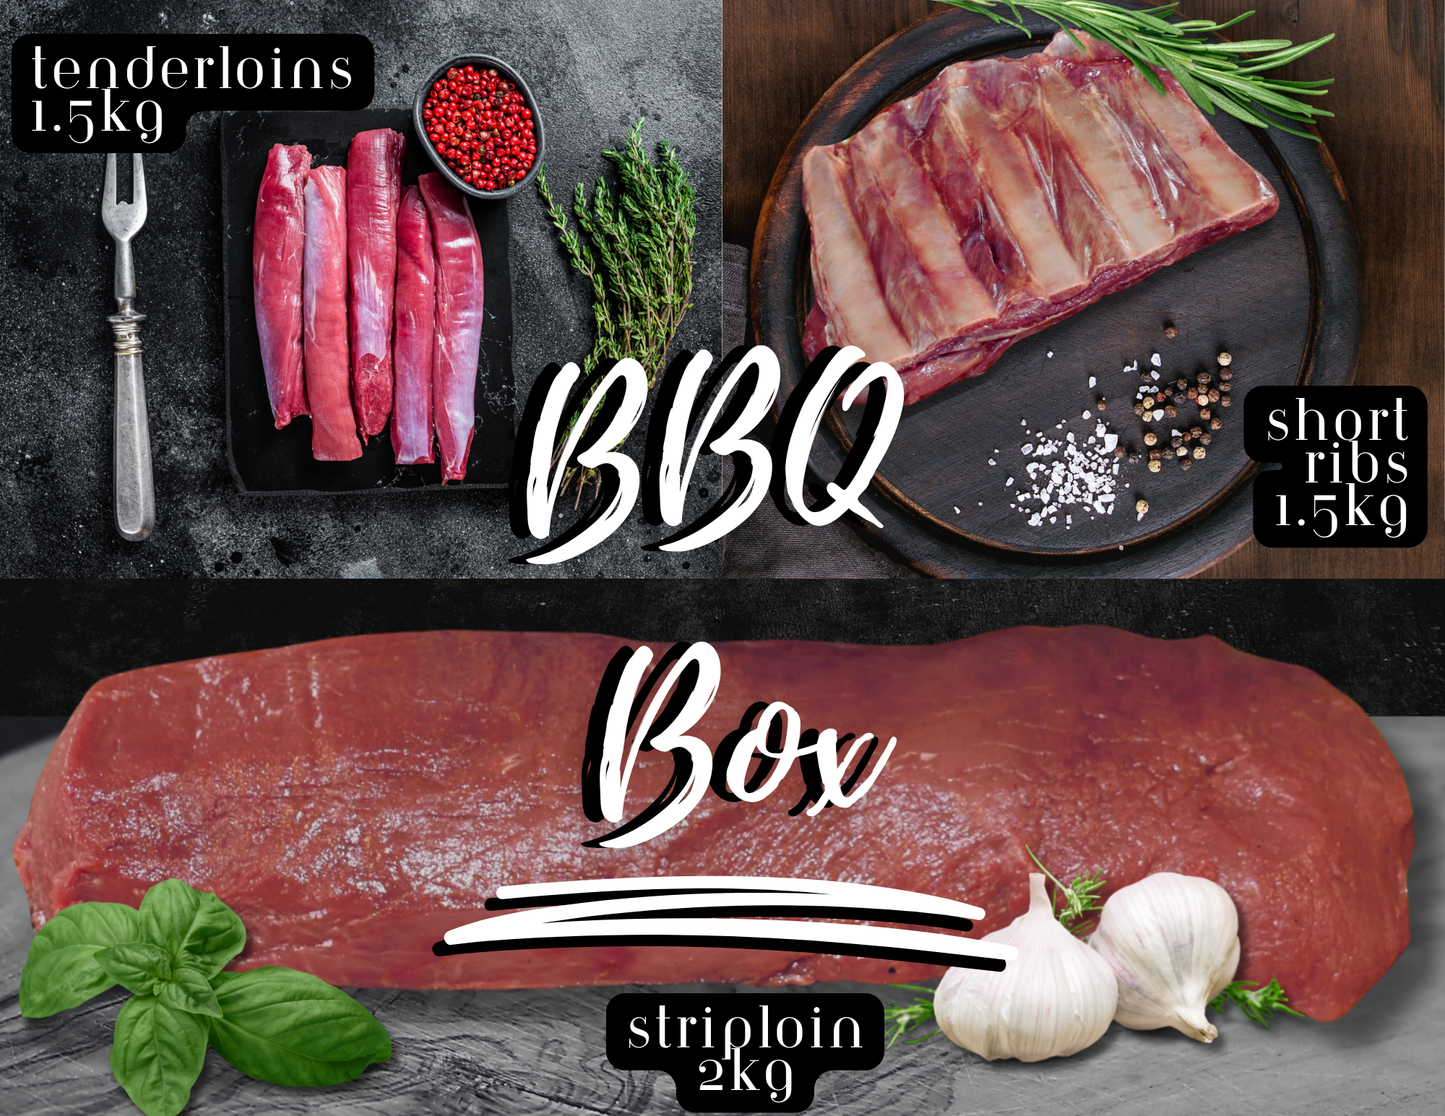 Meat Box - BBQ